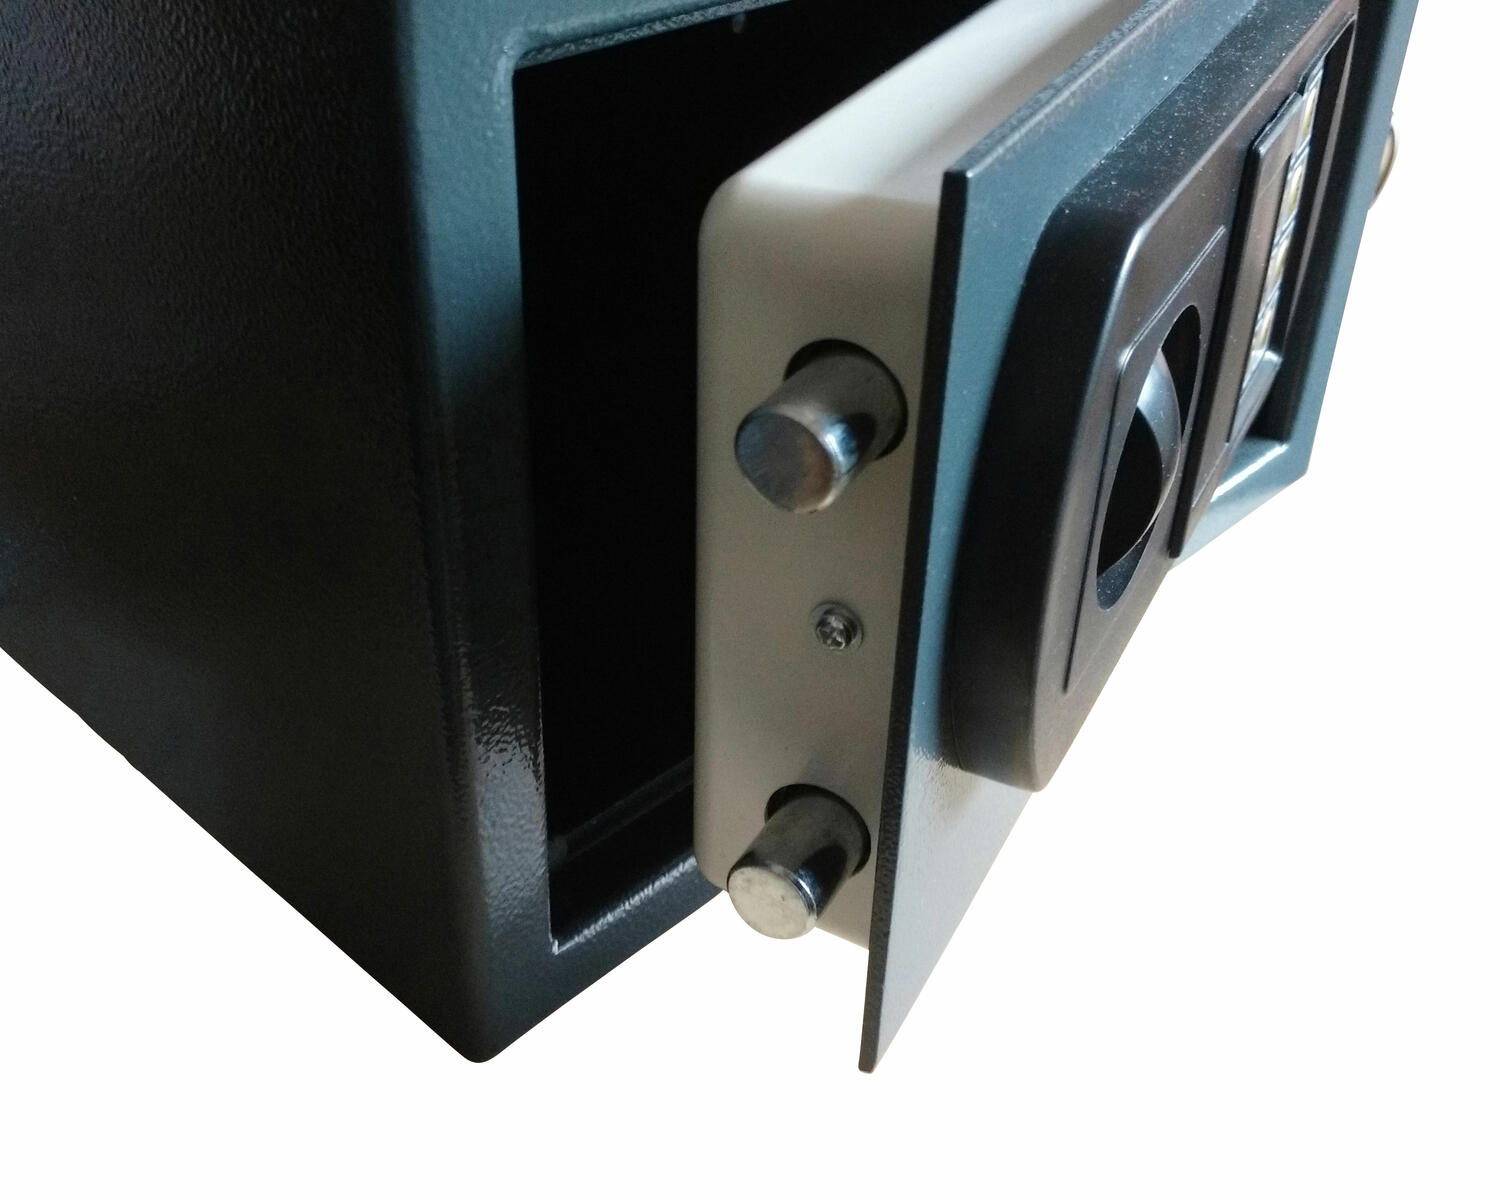 Tresor Safe 35x25x25cm mit elektronischem Zahlenschloss fr Tisch/Wandmontage anthrazit